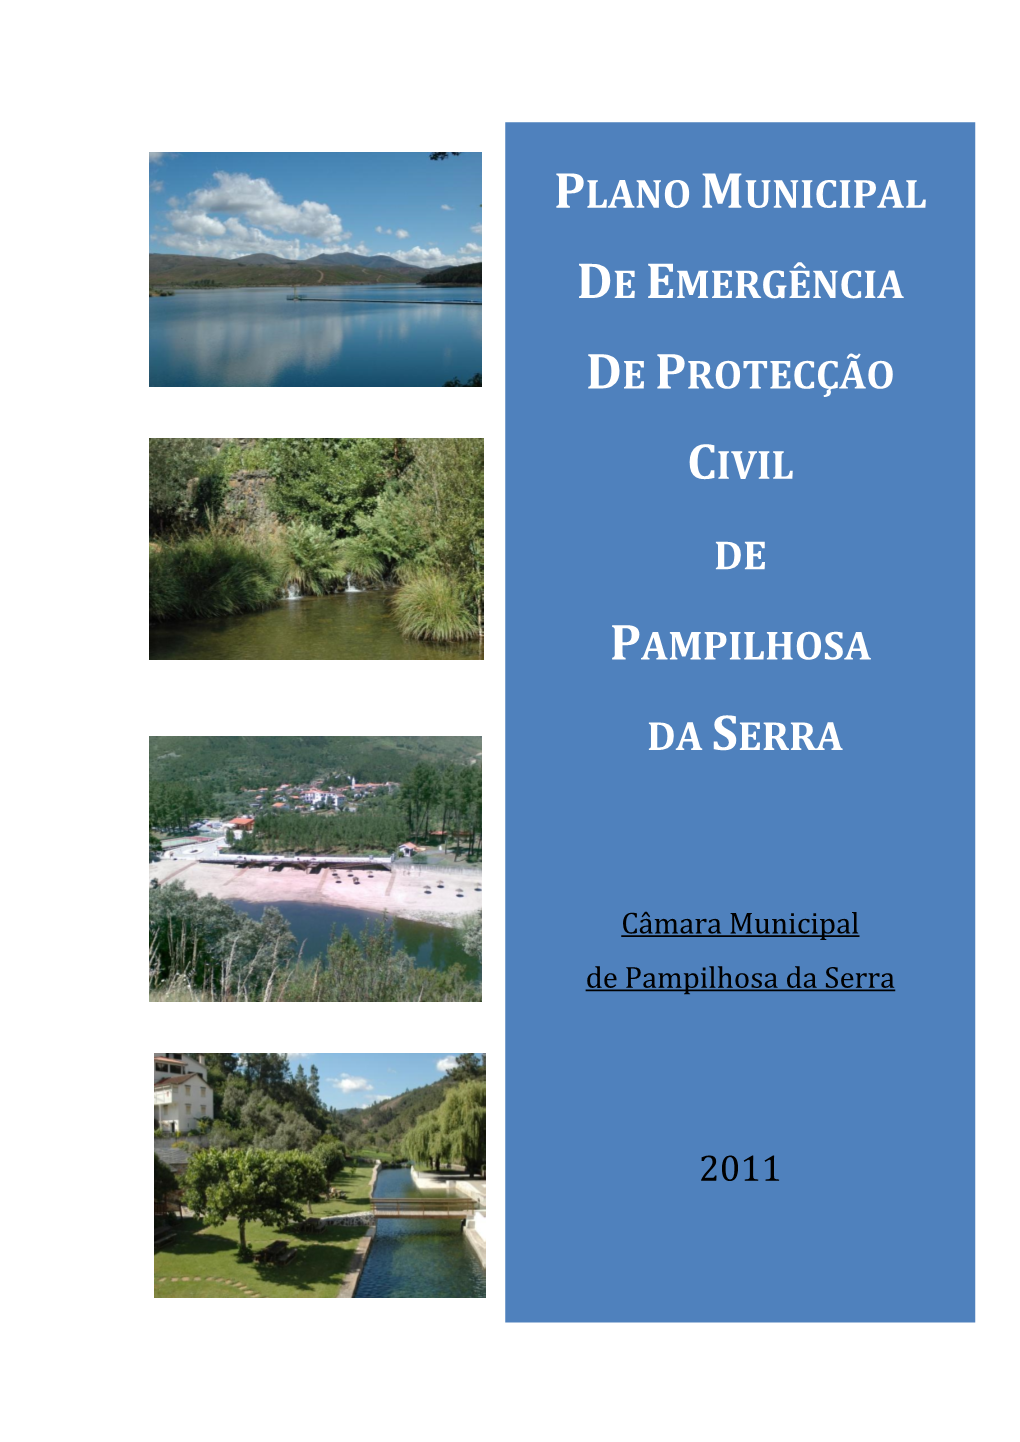 Plano Municipal De Emergência De Protecção Civil De Pampilhosa Da Serra